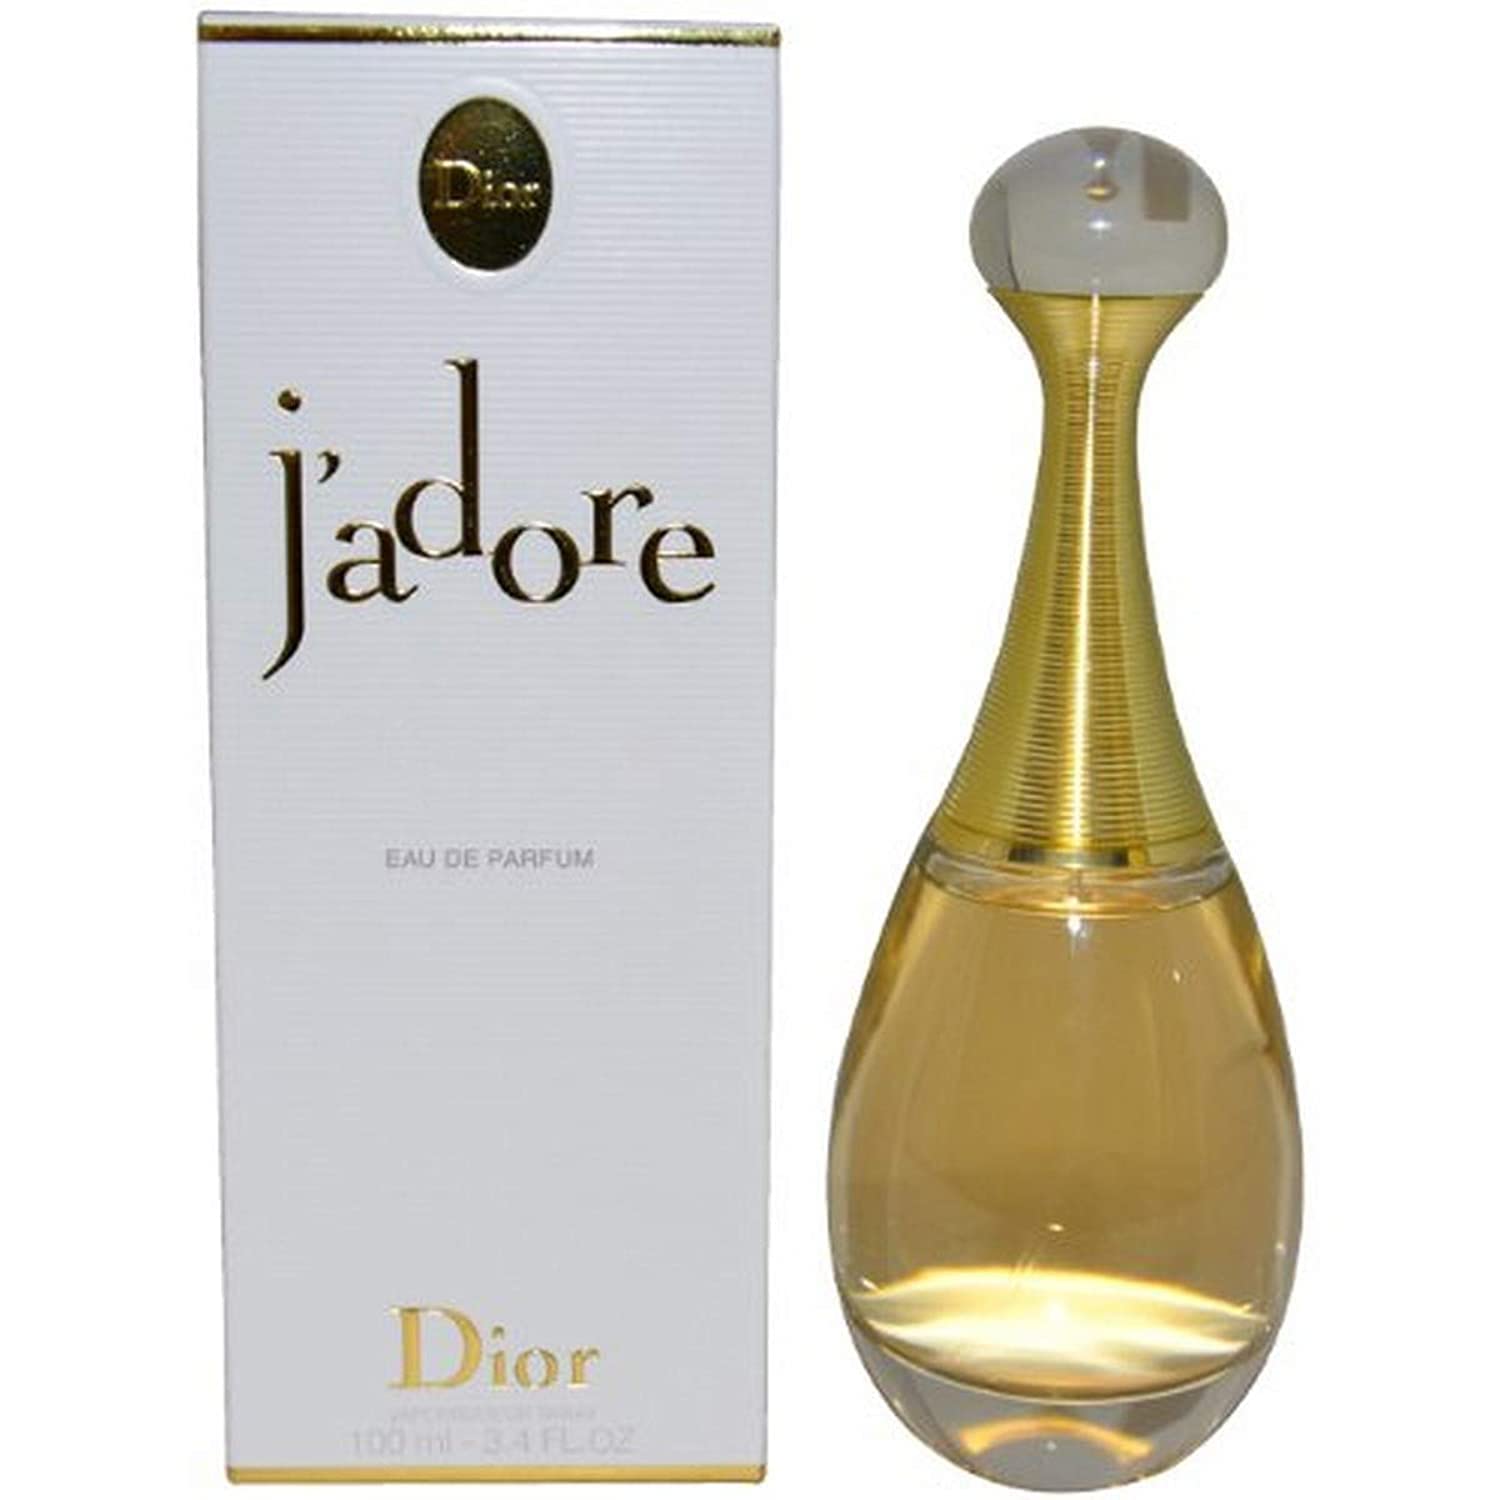 Nước hoa nữ Dior Jadore Infinissime EDP   Chai 100ml 